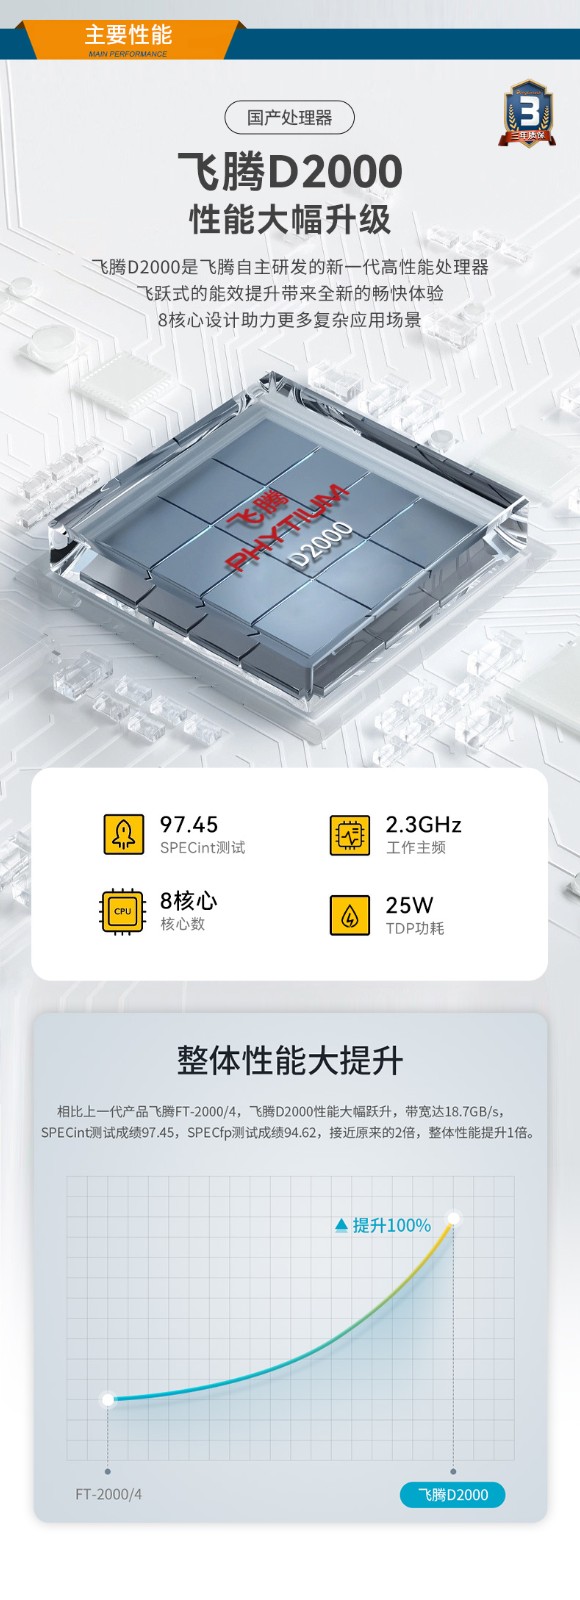 国产化芯片工控机,飞腾D2000处理器工业主机,DT-5206-SD2000MB.jpg